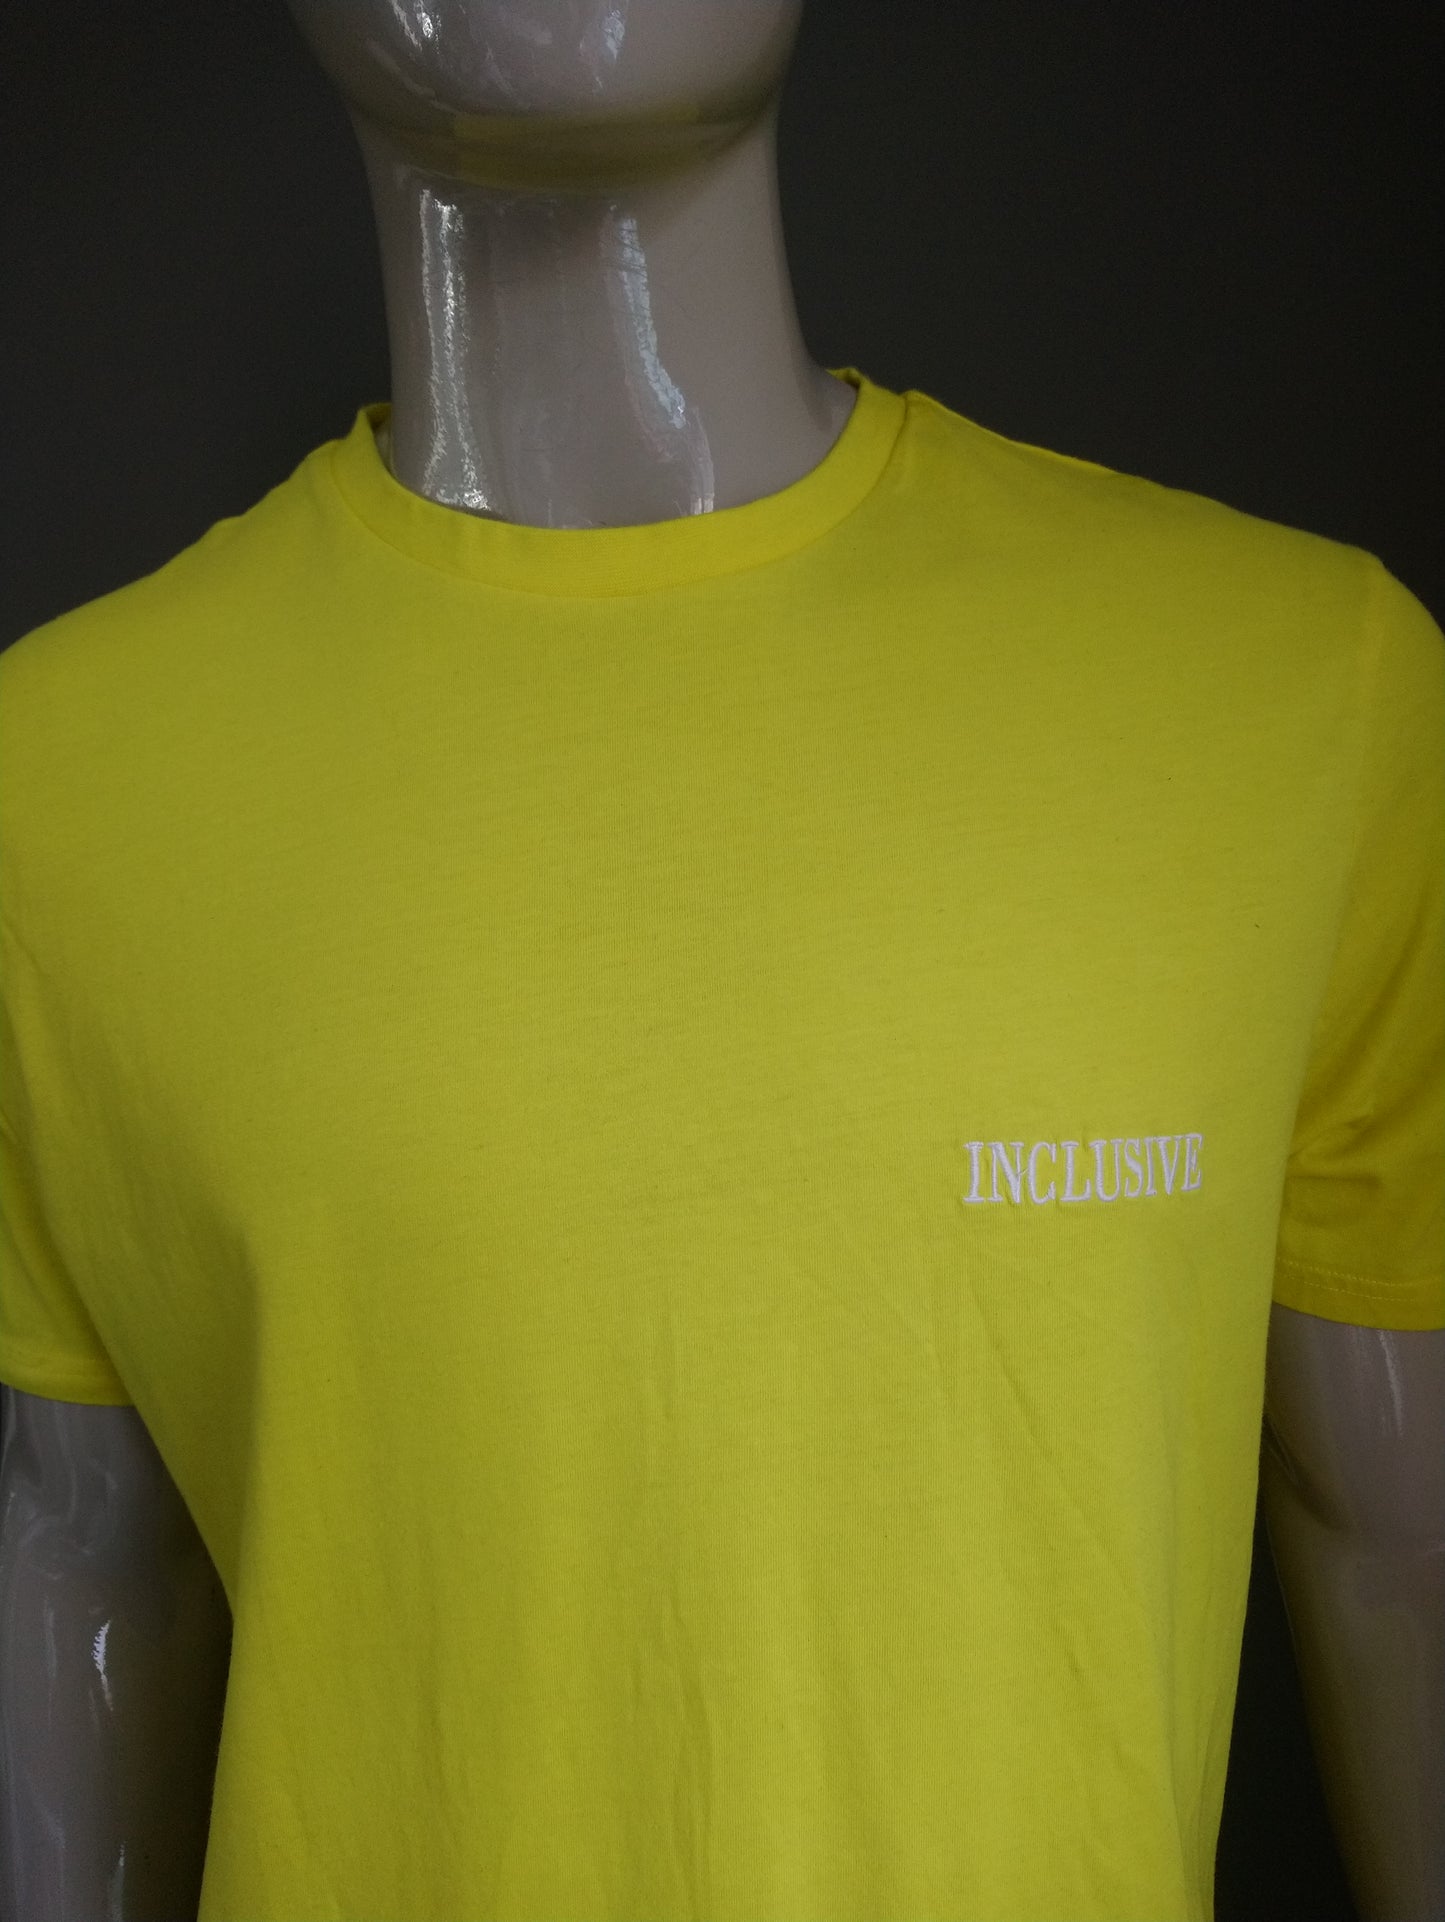 George -Shirt. Gelb gefärbt. Größe xxl / 2xl.